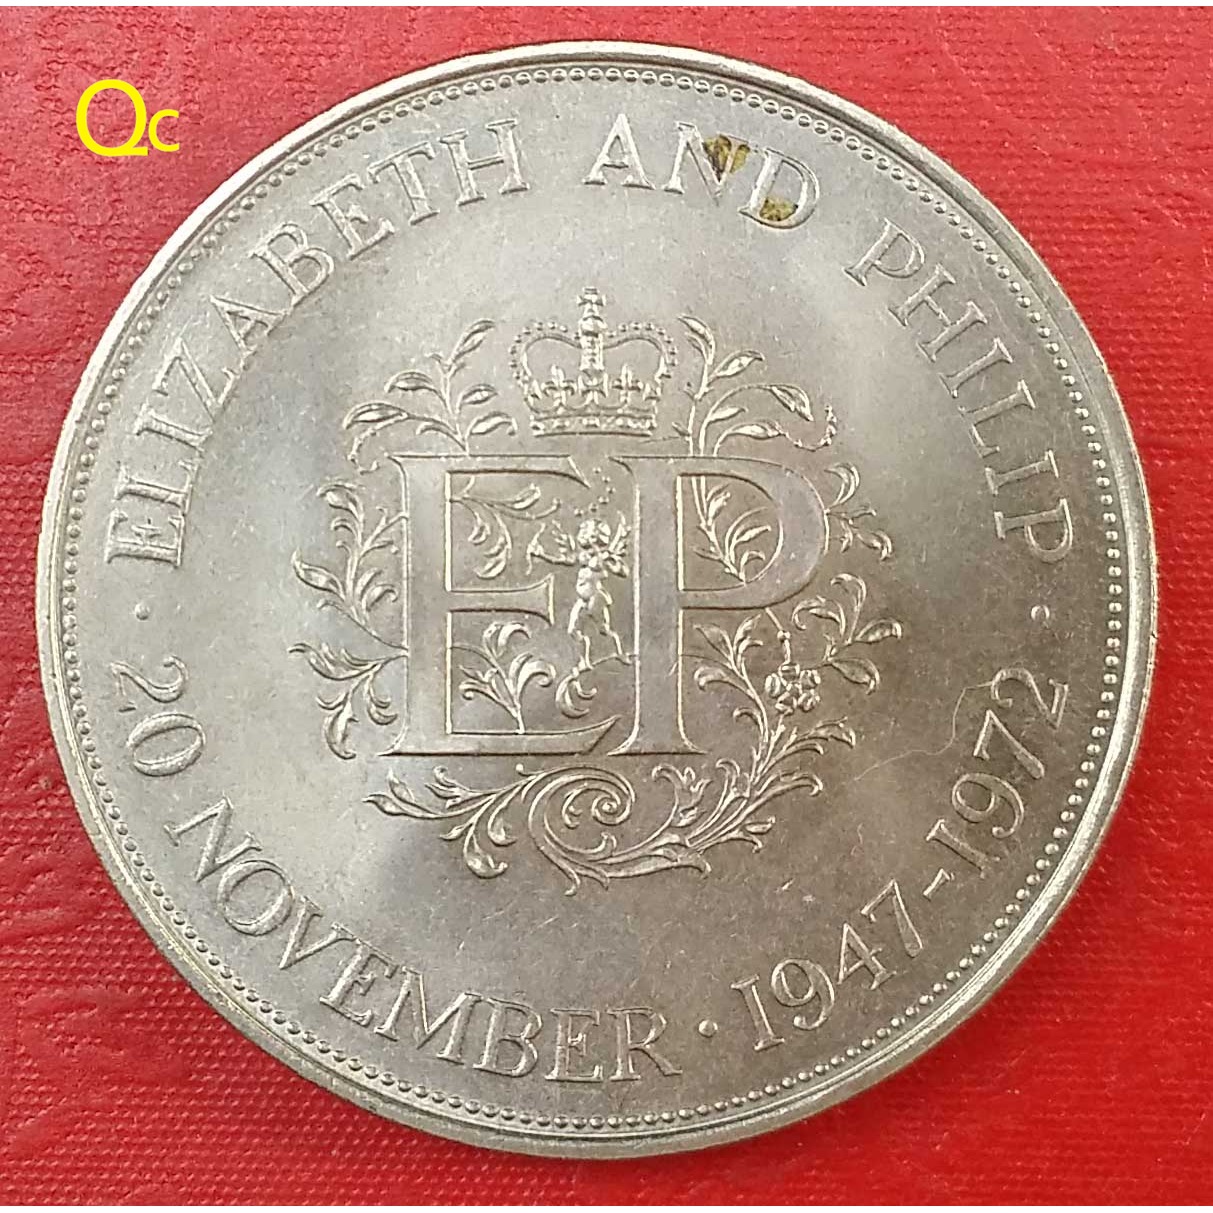 英国1克朗1972年伊丽莎白女王银婚纪念硬币爱神丘比特38.5毫米